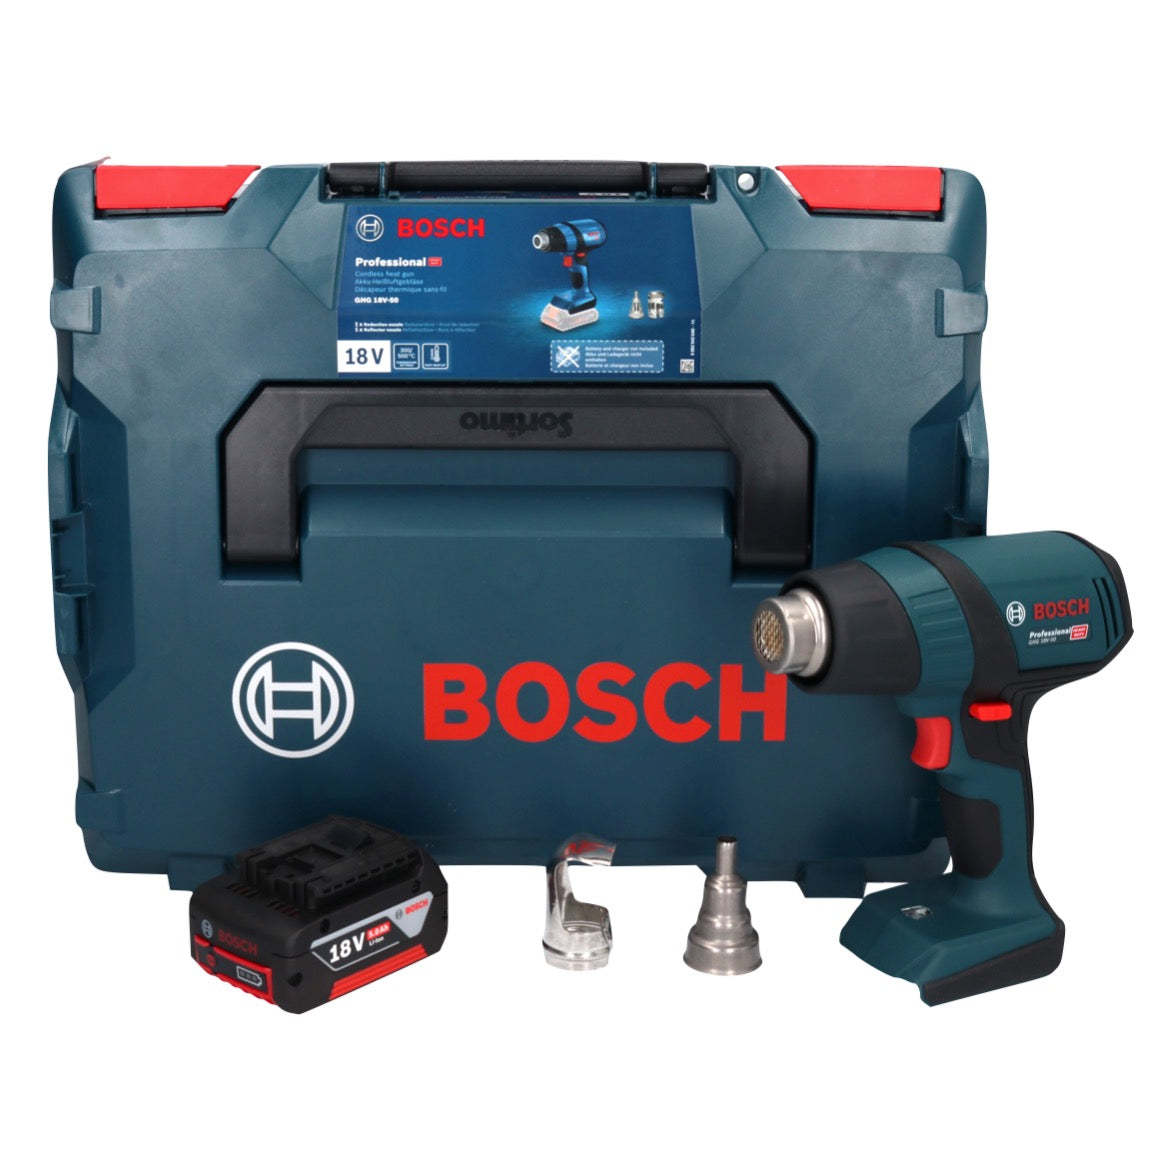 Bosch Toolbrothers / Akku 300° C Professional 18 500° Heissluftgebläse V GHG – 18V-50